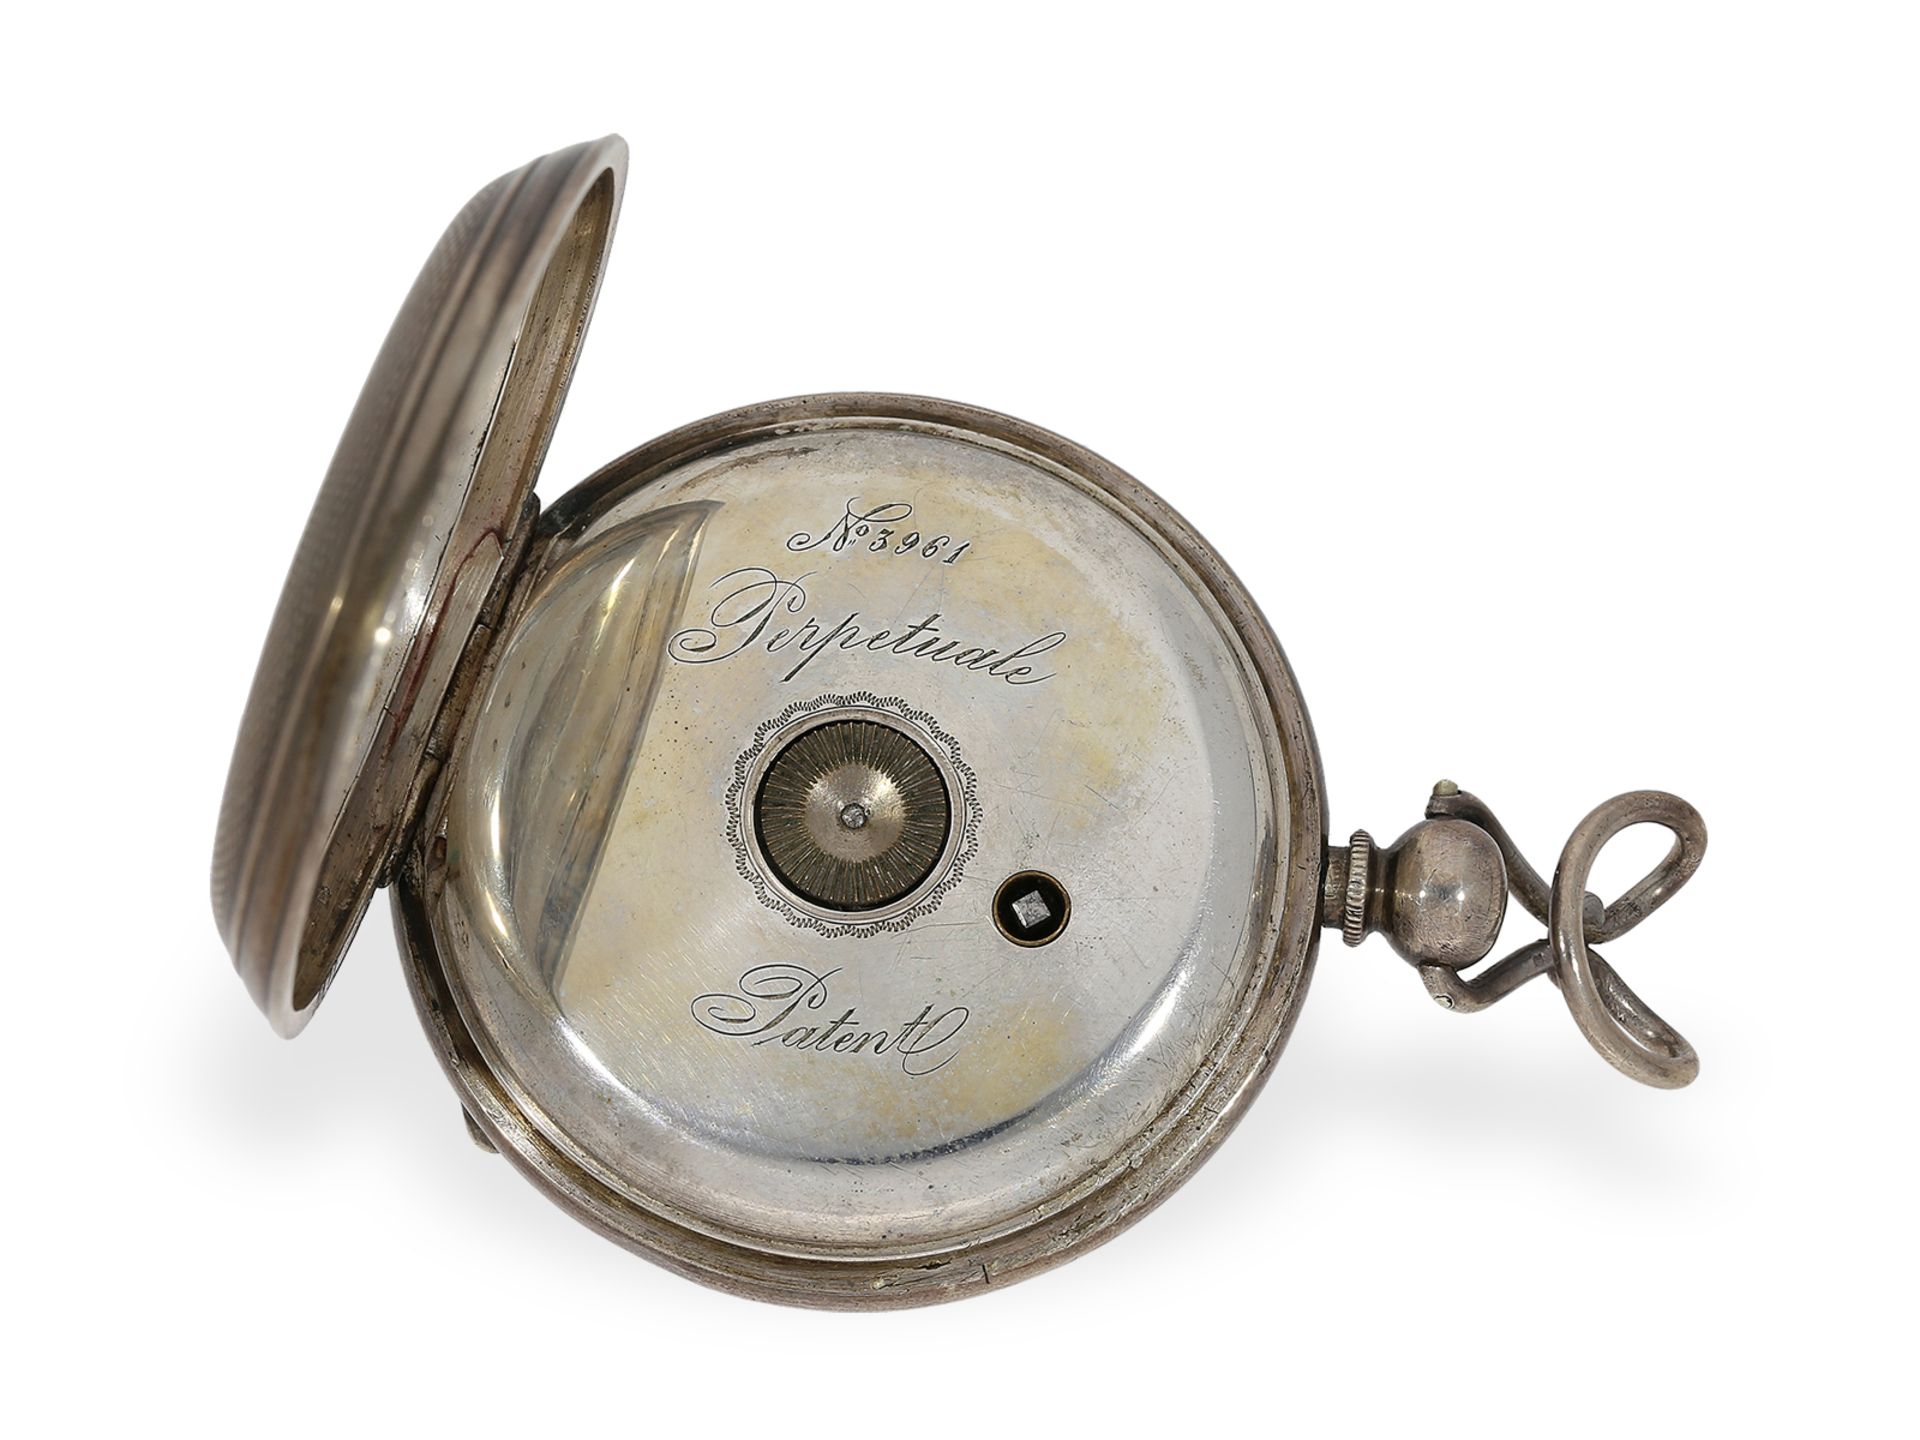 Rare Taschenuhr mit automatischem Aufzug "Loehr Perpetuale", ca.1880 - Bild 3 aus 6